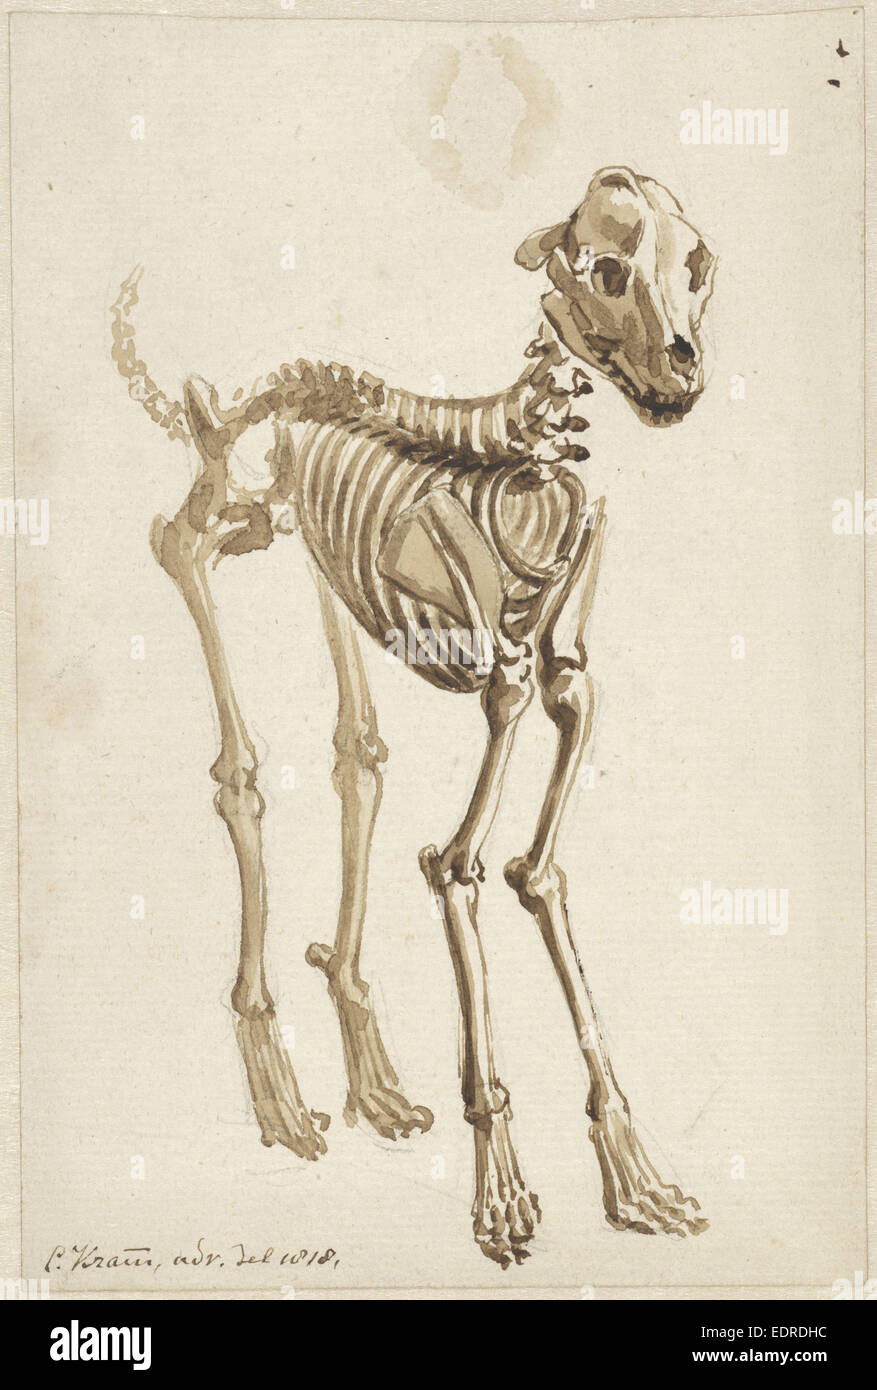 El esqueleto de un perro, desplazamiento frontal, Christiaan Kramm, 1818 Foto de stock